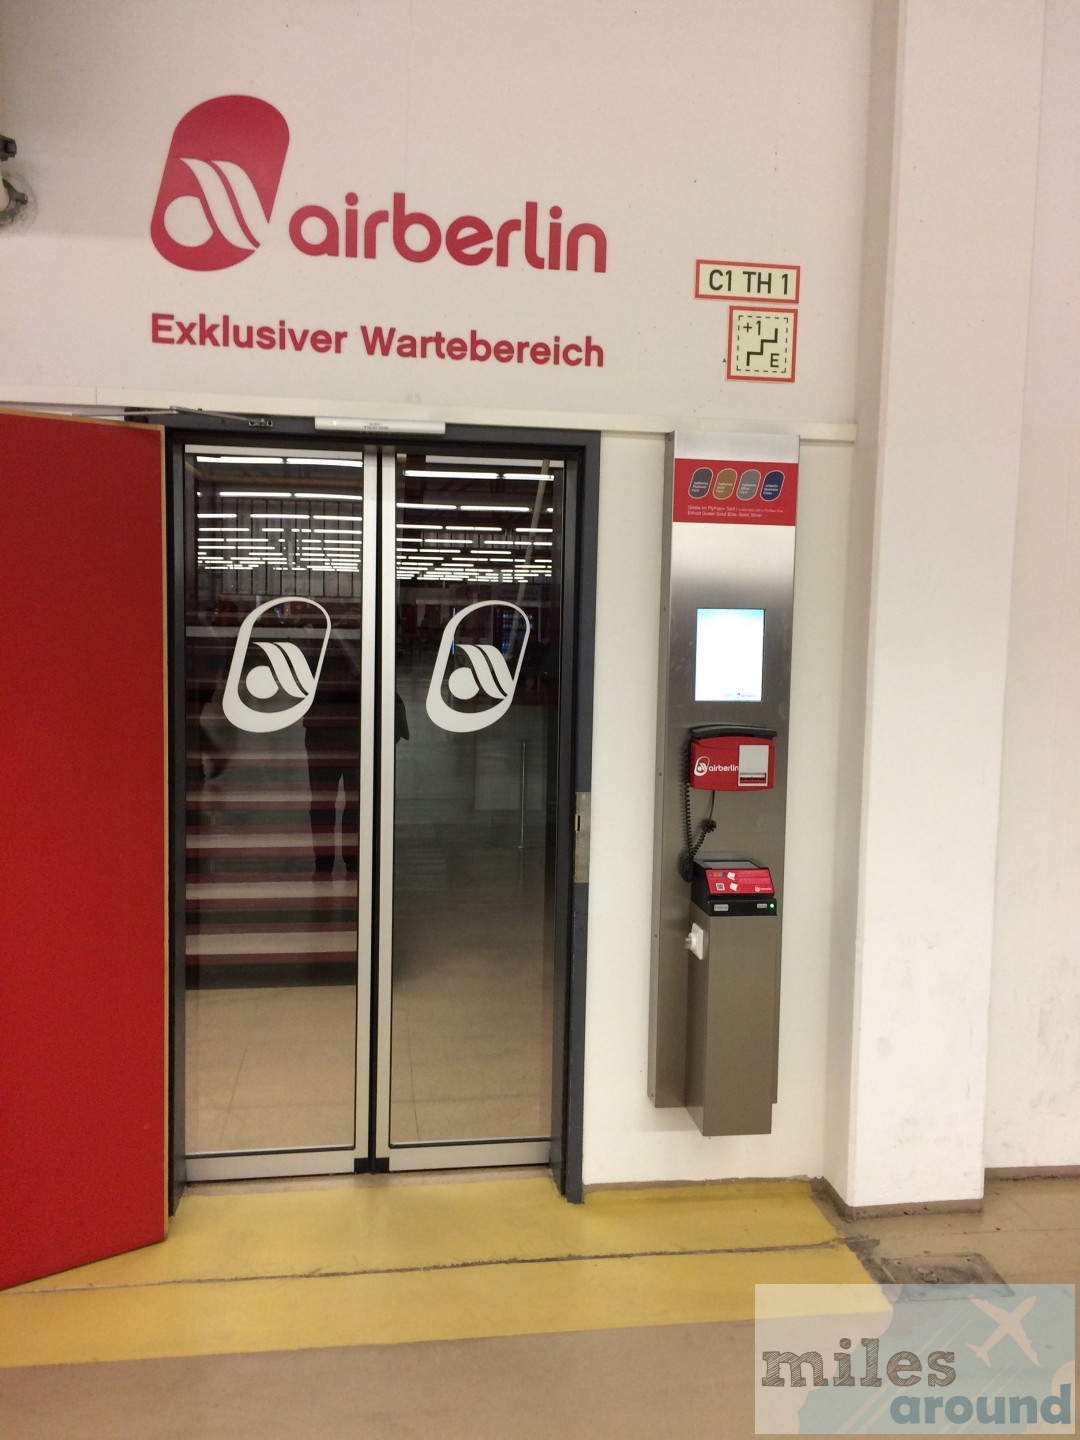 Eingang - airberlin Exklusiver Wartebereich am Flughafen Berlin-Tegel